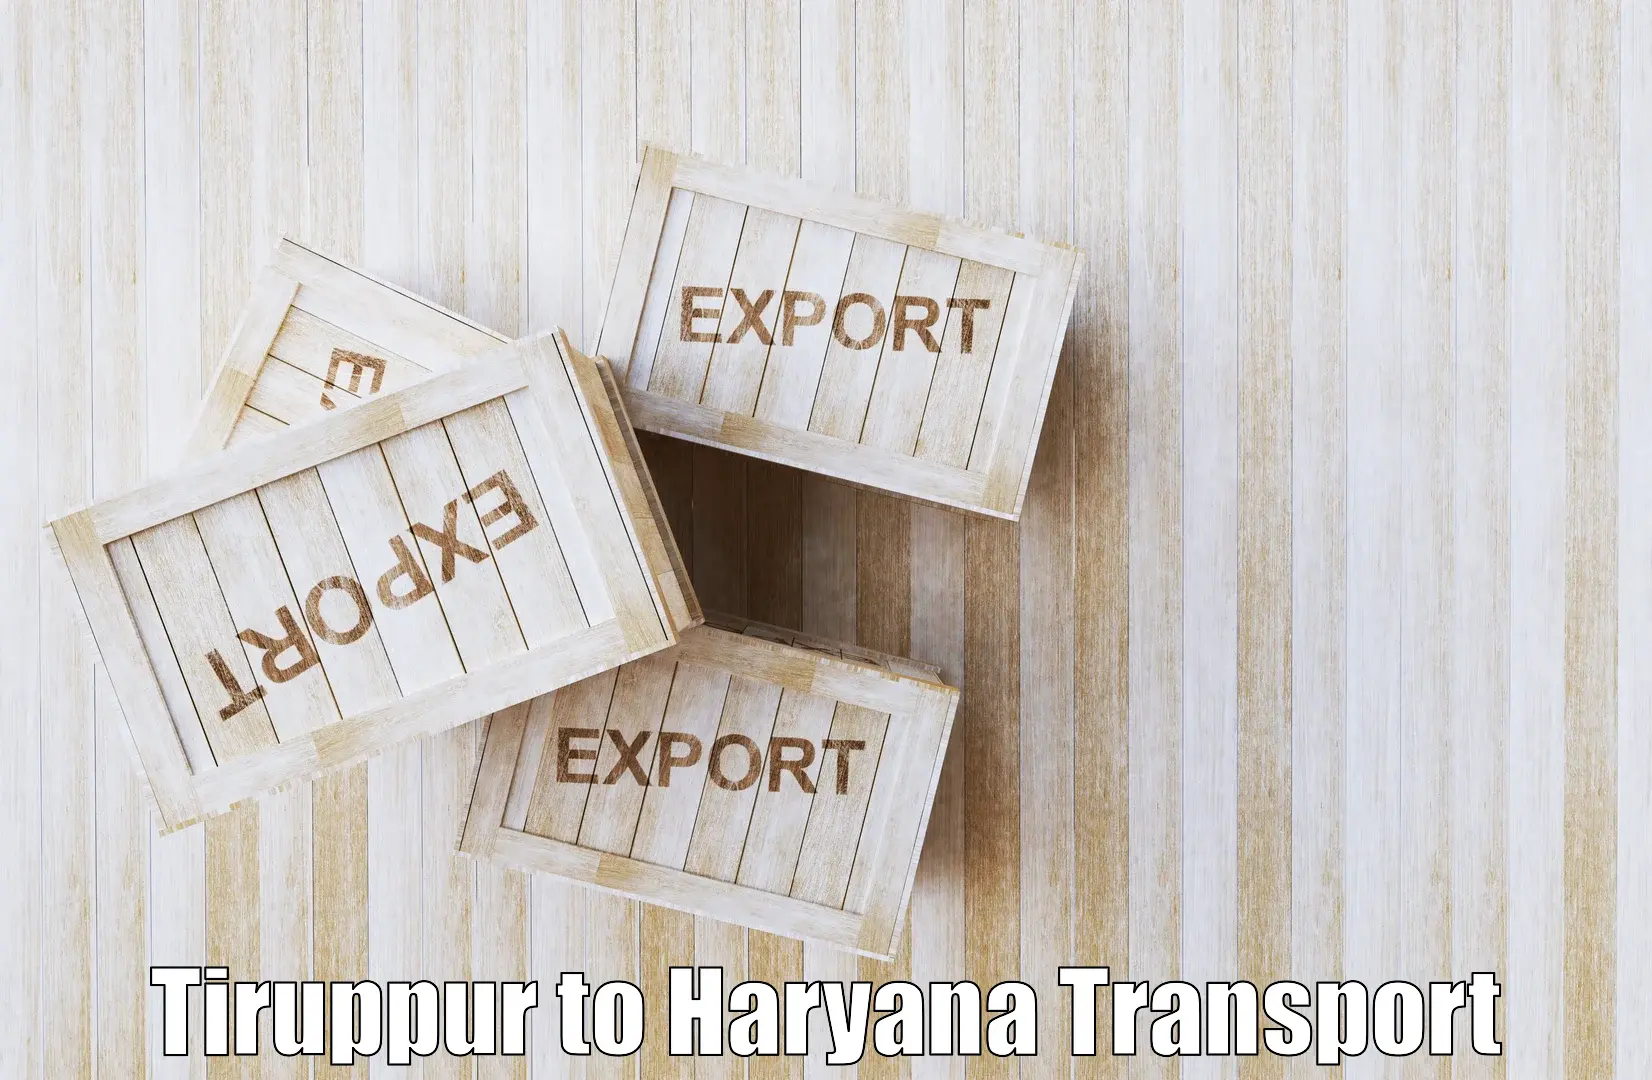 Lorry transport service Tiruppur to Kalanwali